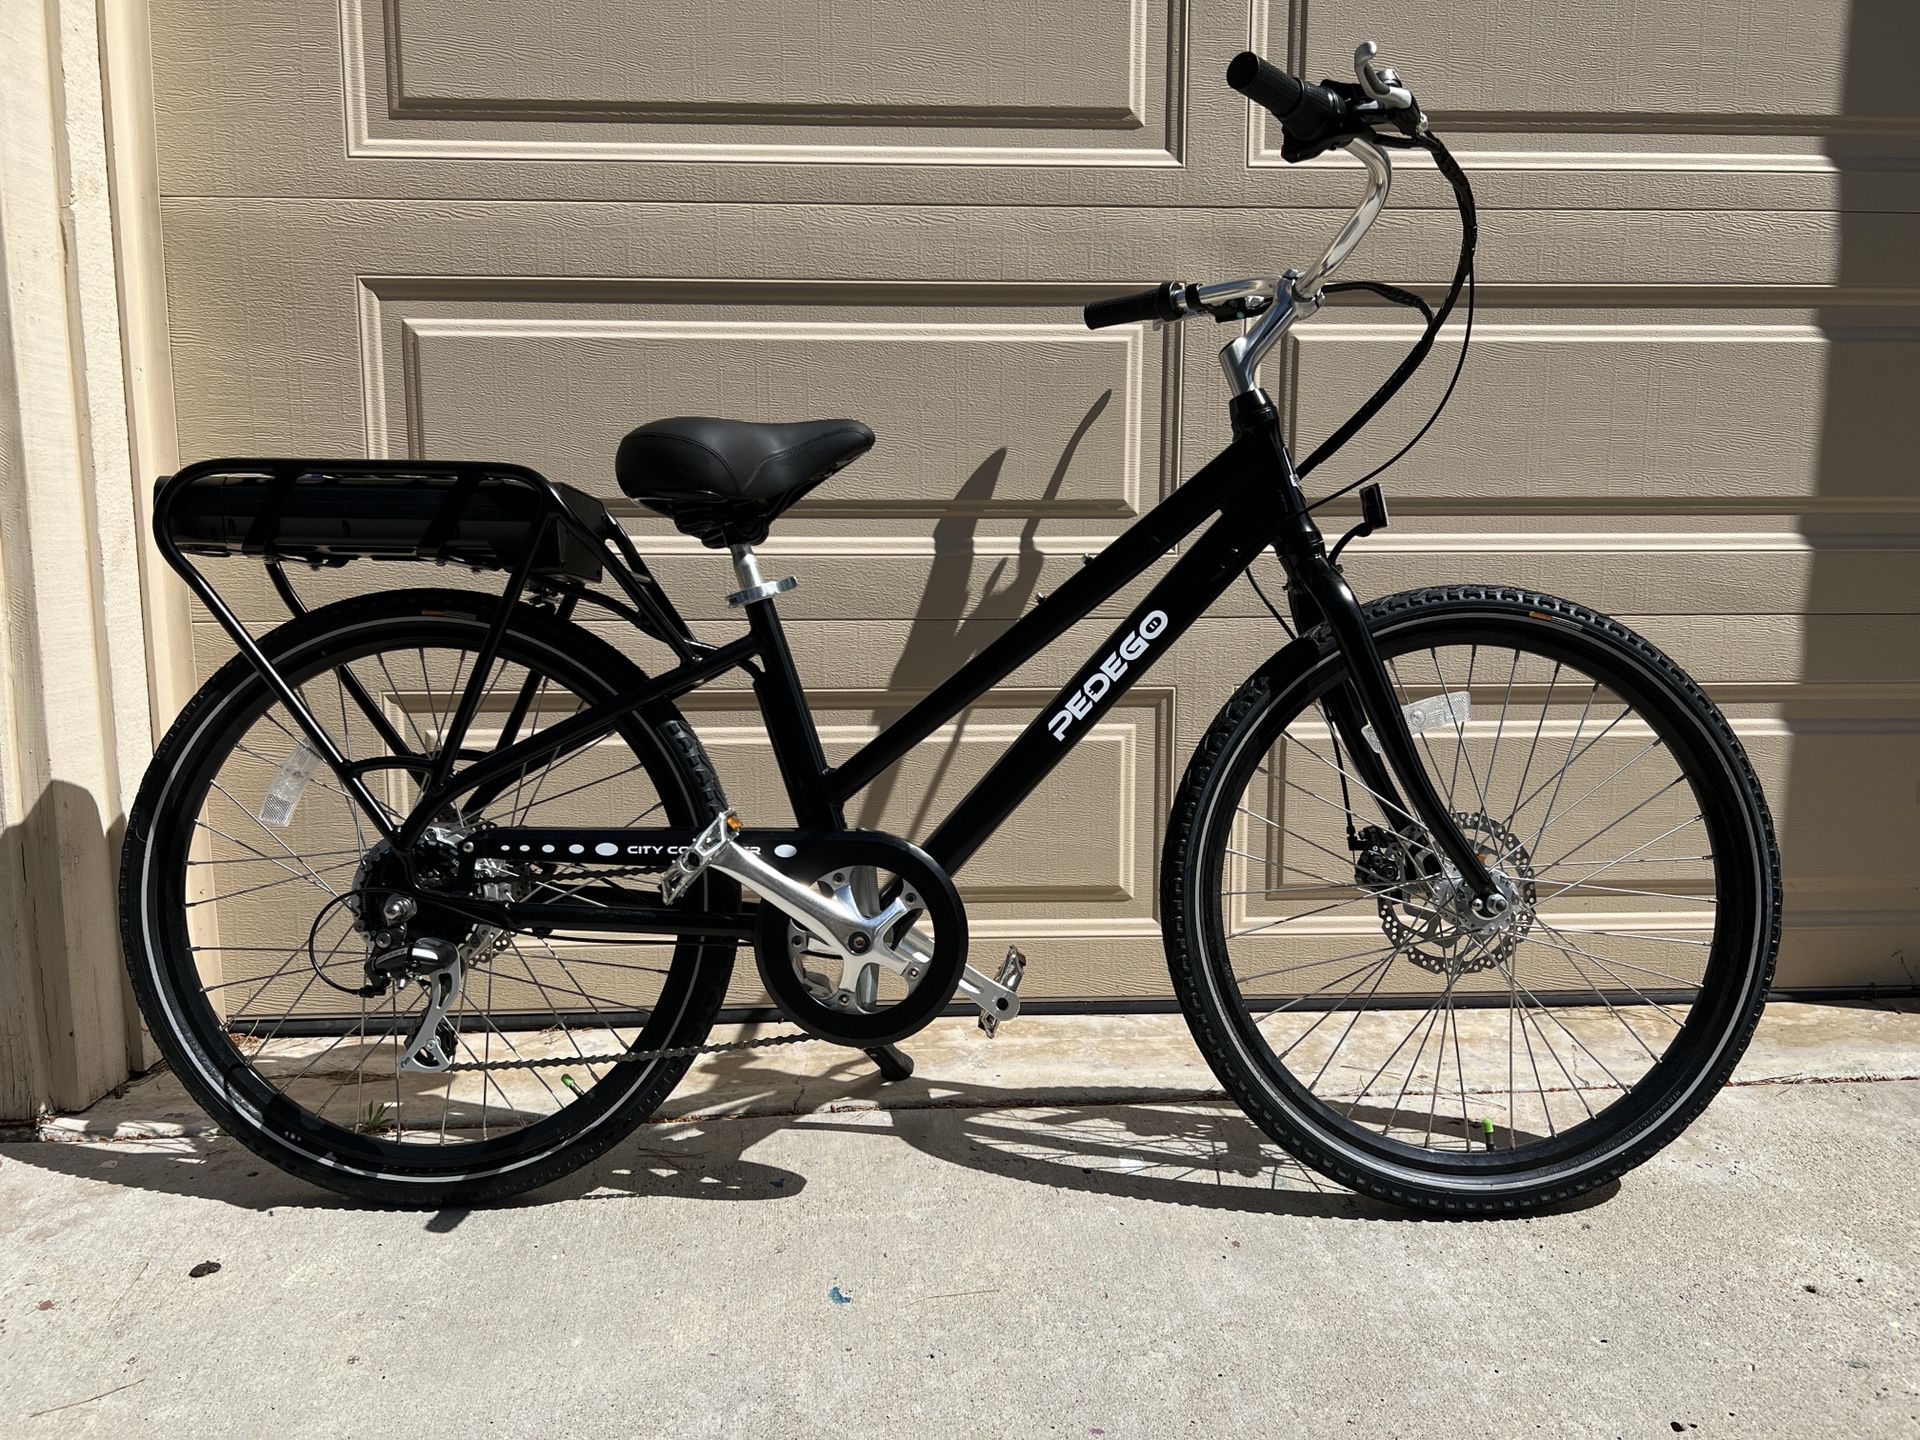 Like-New Pedego Electric Bike